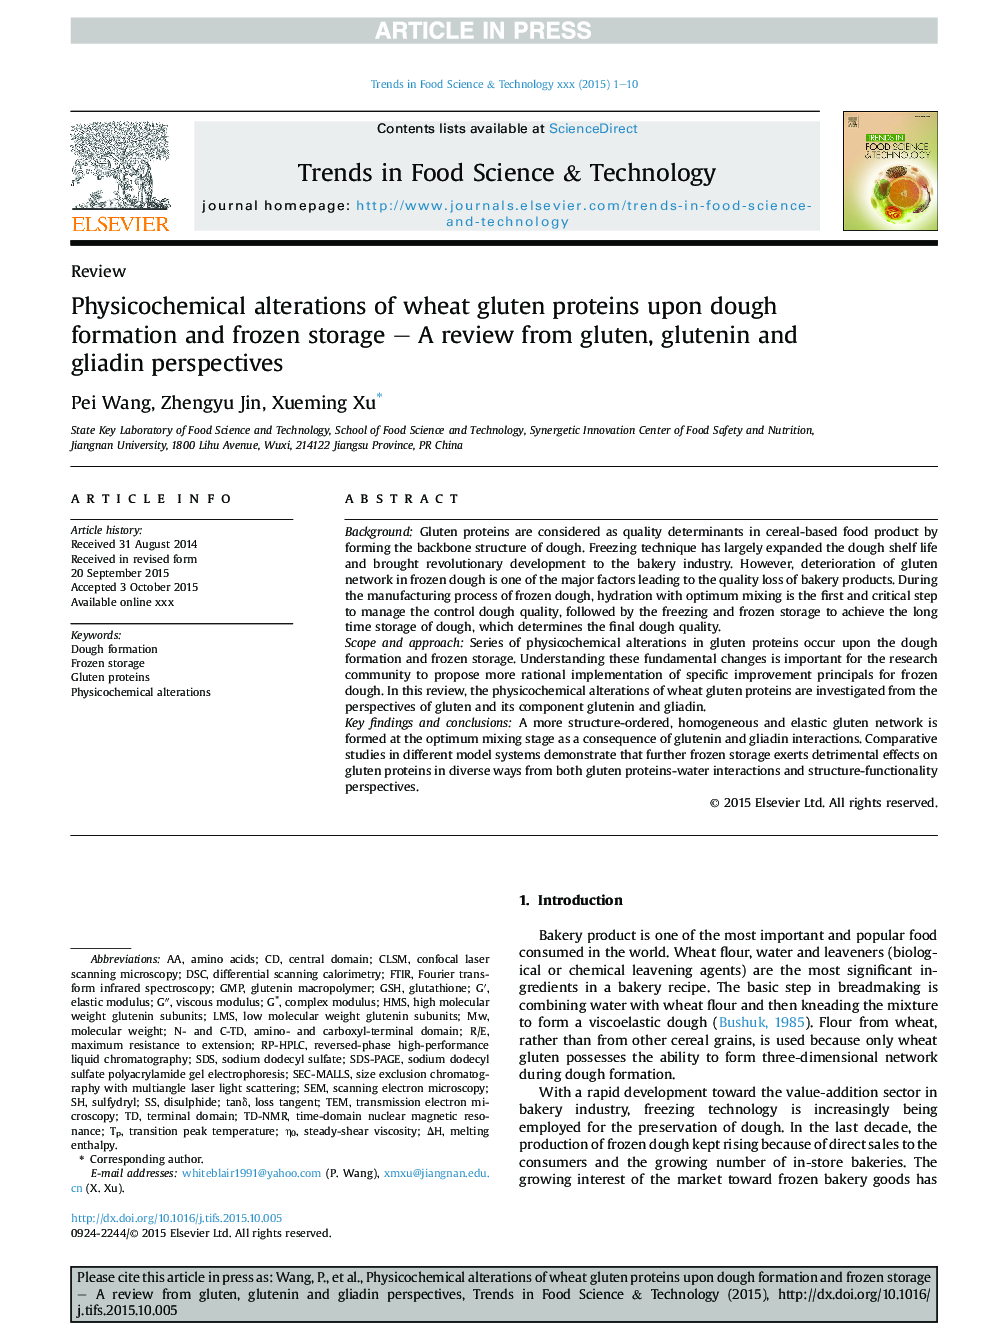 تغییرات فیزیکوشیمیایی پروتئین های گلوتن گندم بر روی تشکیل خمیر و ذخیره سازی یخ زده - بررسی دیدگاه های گلوتن، گلوتنین و گلیادین 